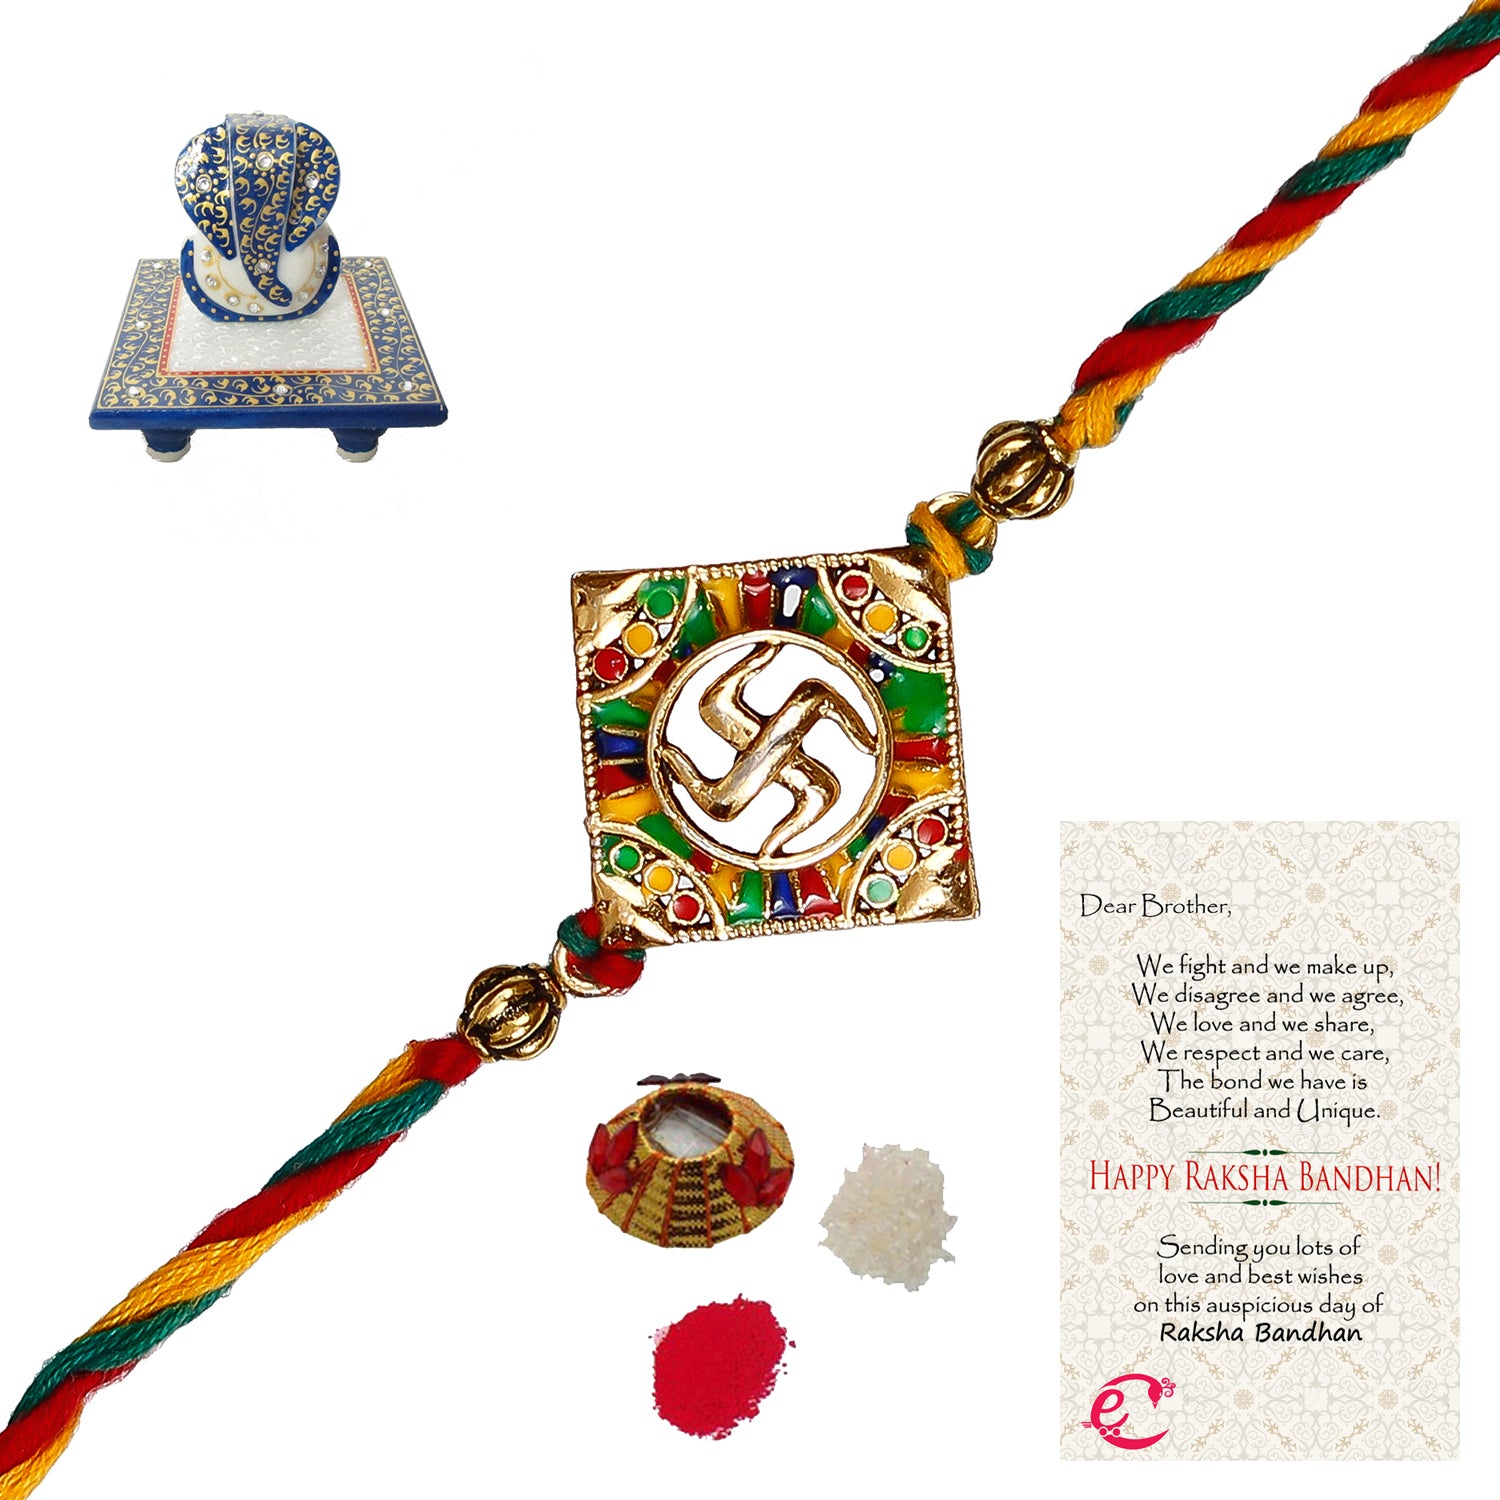 Designer Religious Swastik Rakhi with Lord Ganesha Marble Chowki and Roli Tikka Matki, Best Wishes Greeting Card